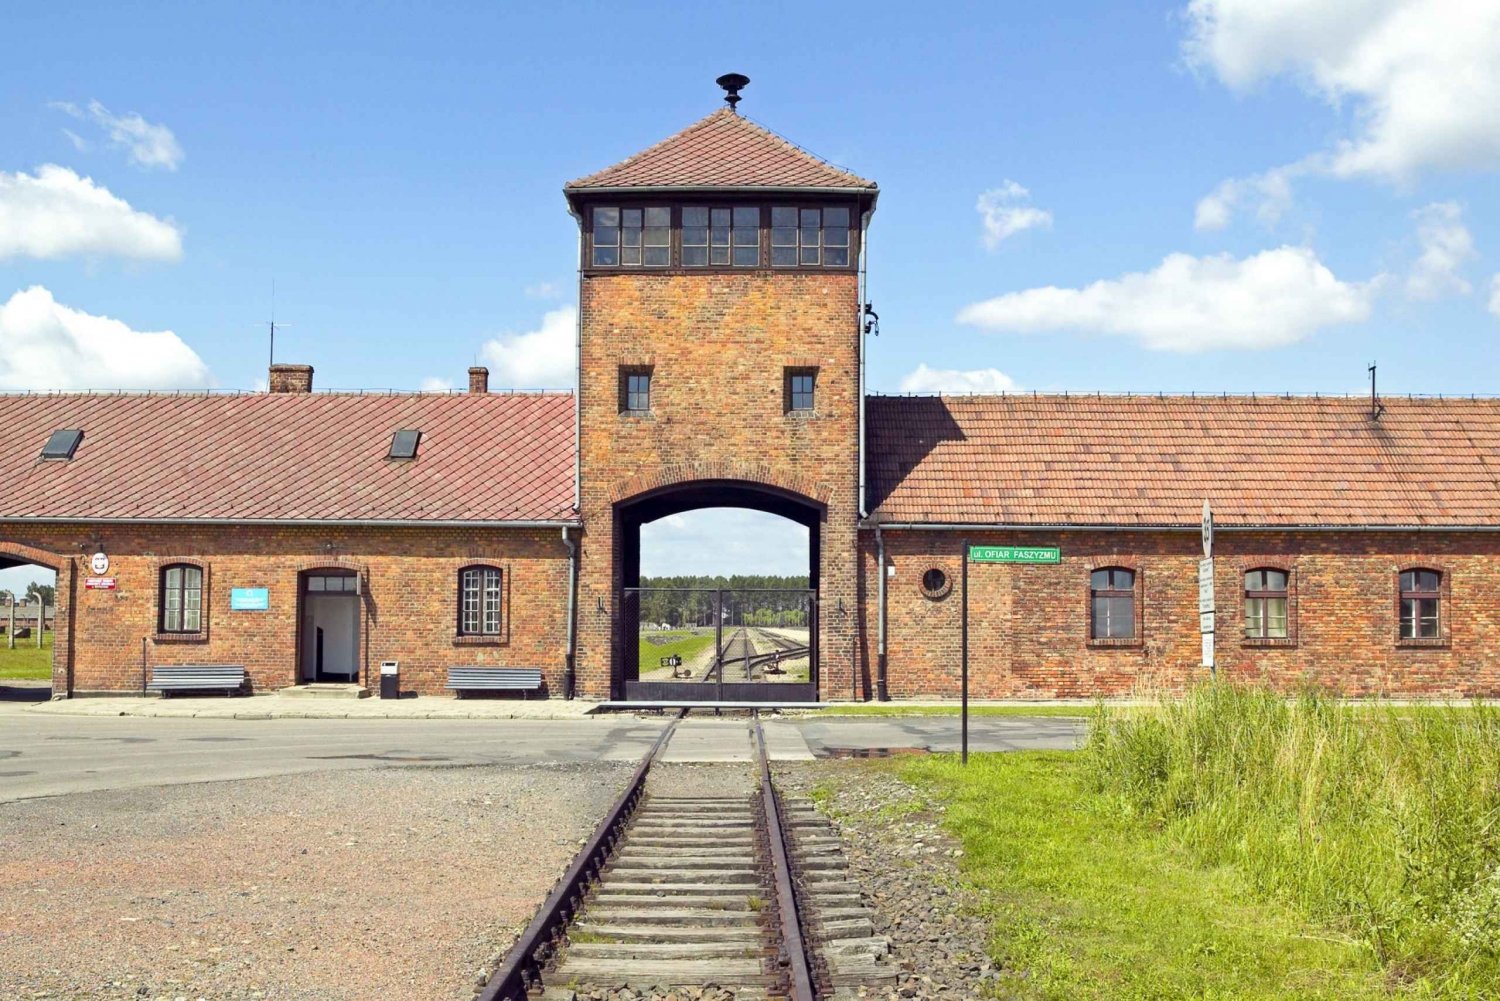 Auschwitz-Birkenau & Salt Mine Guided Tour in 1 Day!